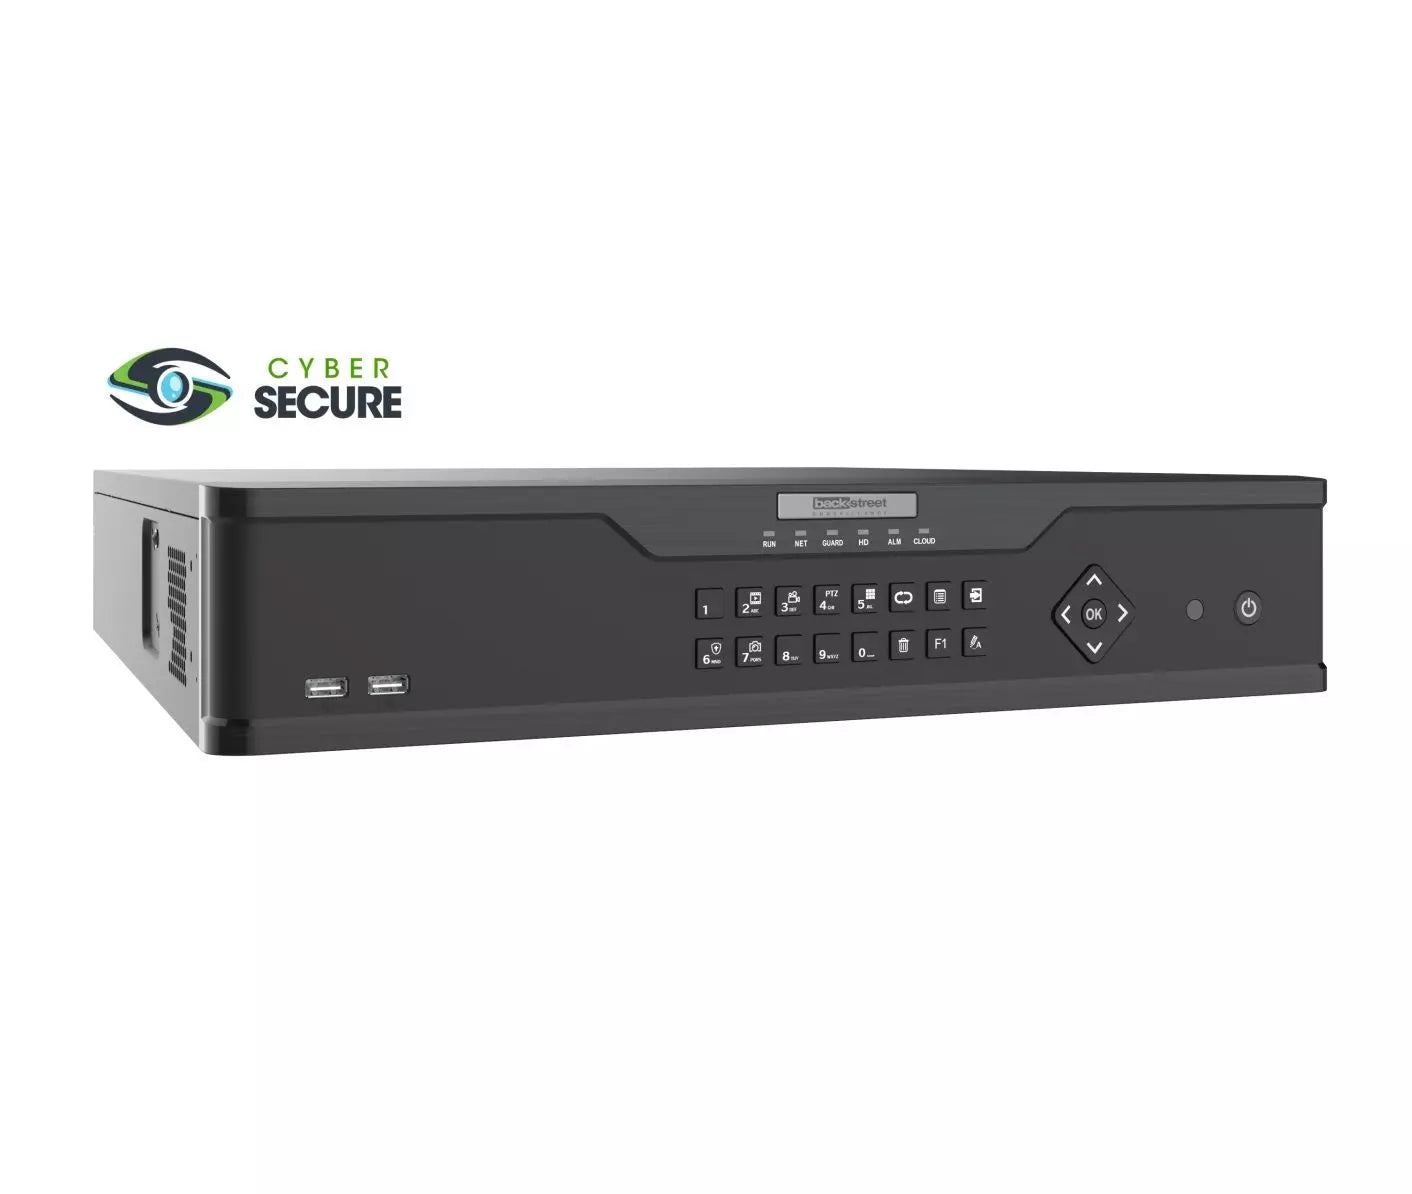 Backstreet Surveillance CS32-4K 32 Channel Security NVR, NDAA Certified, Advanced AI